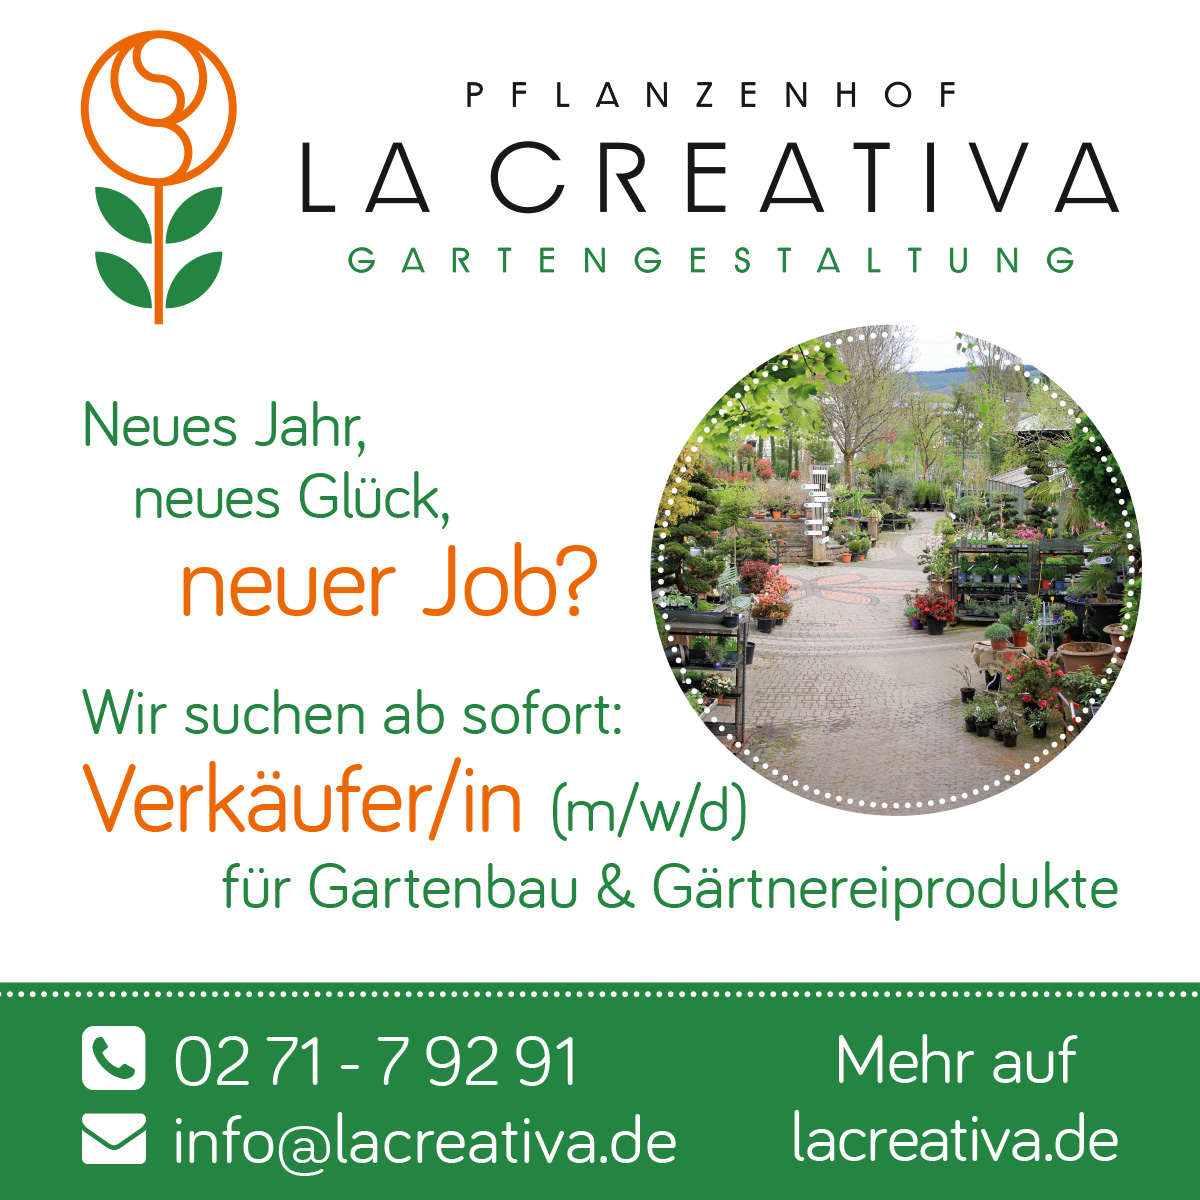 Wir suchen dringend Verstärkung im Verkaufsteam des Pflanzenhofes La Creativa in Netphen Dreis-Tiefenbach (Vollzeit/Teilzeit) und langfristig eine Gartencenterleitung.